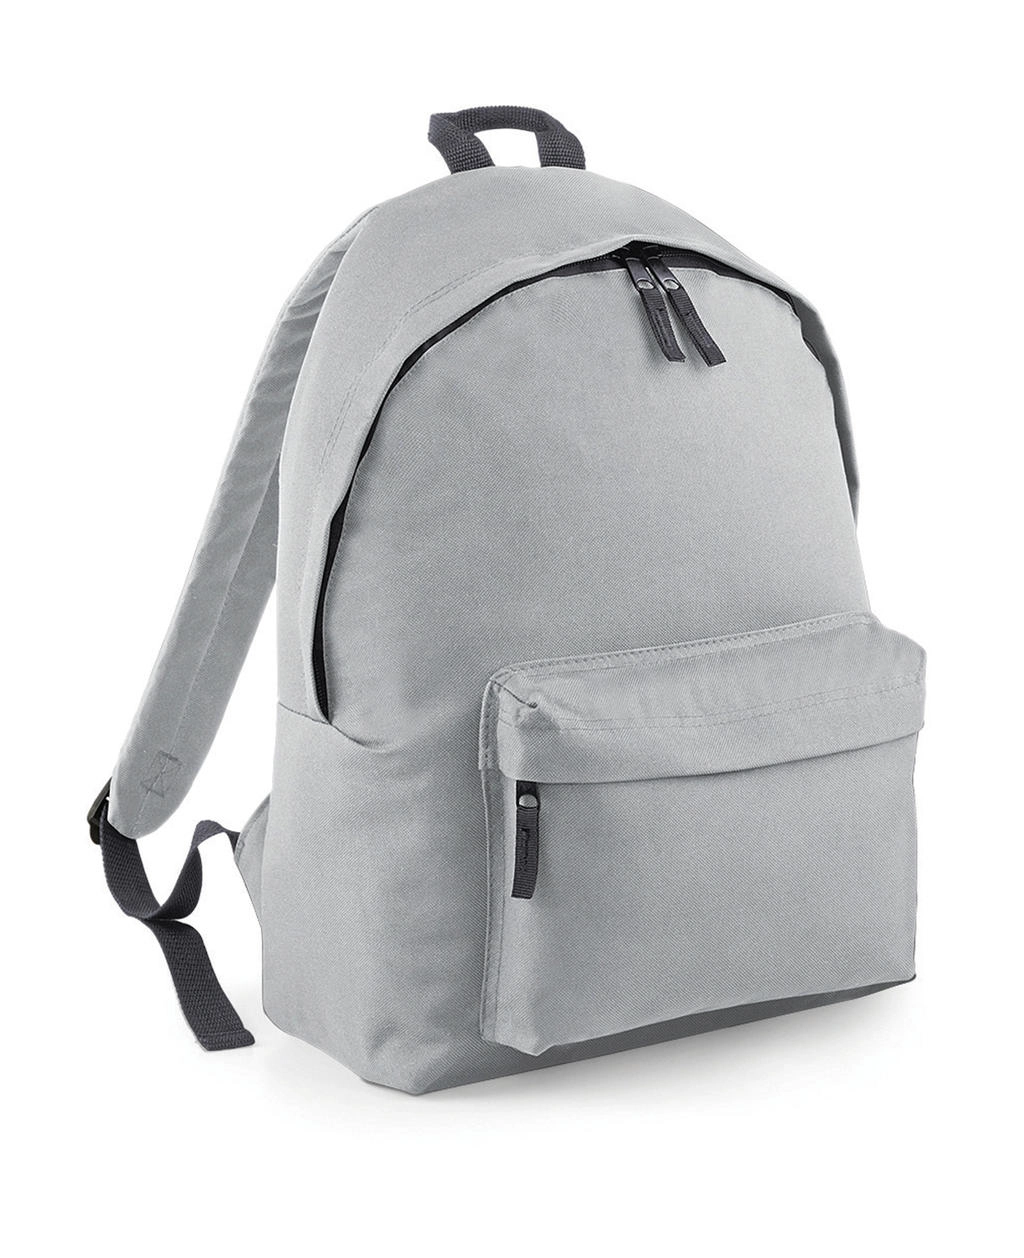 Original Fashion Backpack zum Besticken und Bedrucken in der Farbe Light Grey/Graphite Grey mit Ihren Logo, Schriftzug oder Motiv.